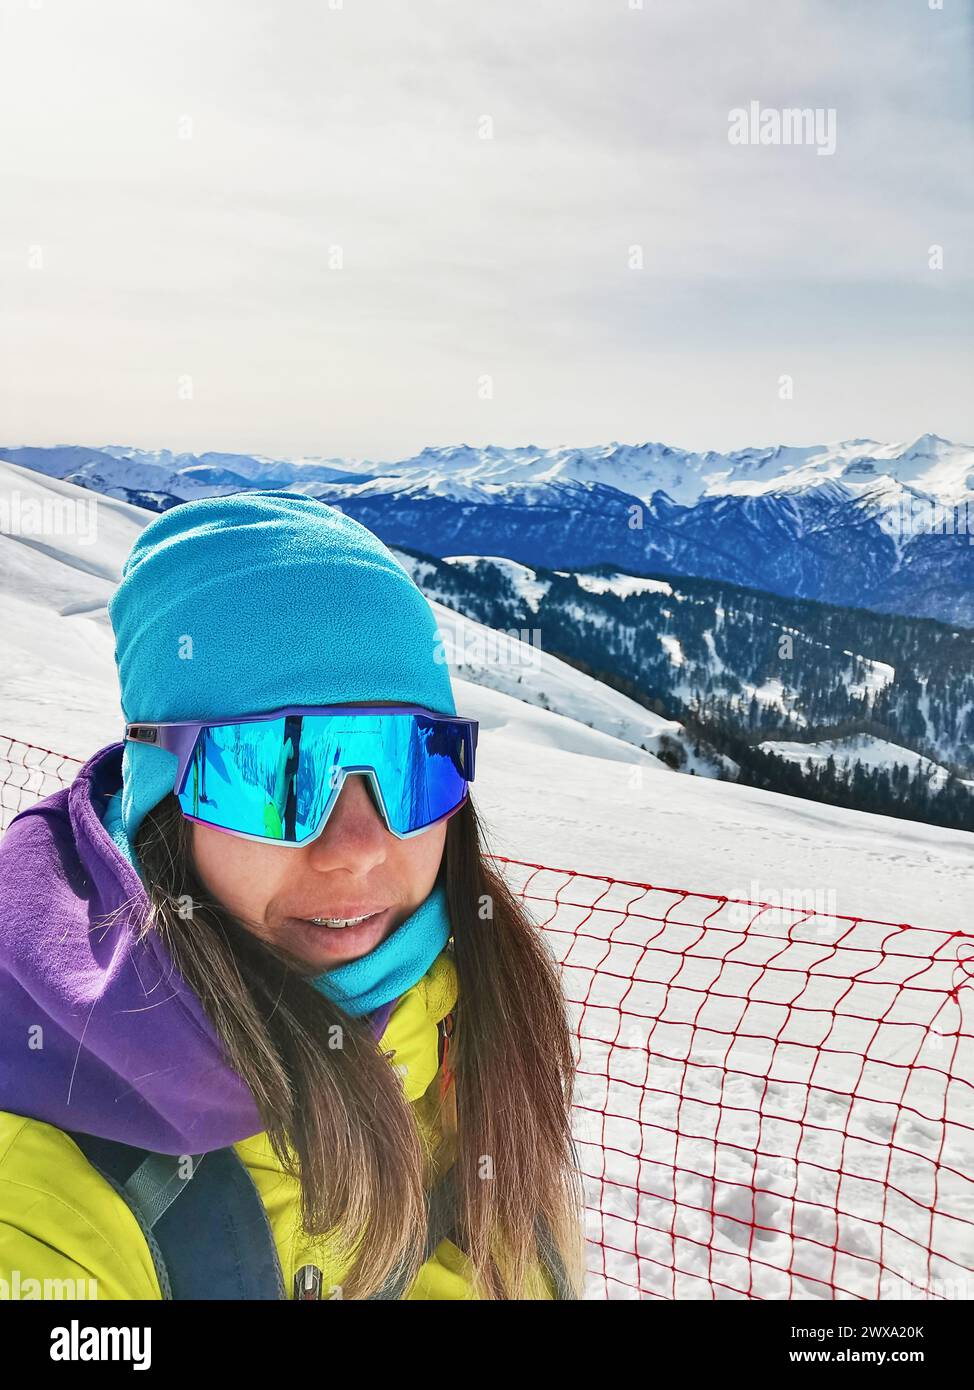 Uno sciatore alpino si fa un selfie con una vasta gamma di cime innevate alle sue spalle, con i suoi vibranti occhiali da sci che riflettono il sole invernale. Foto Stock